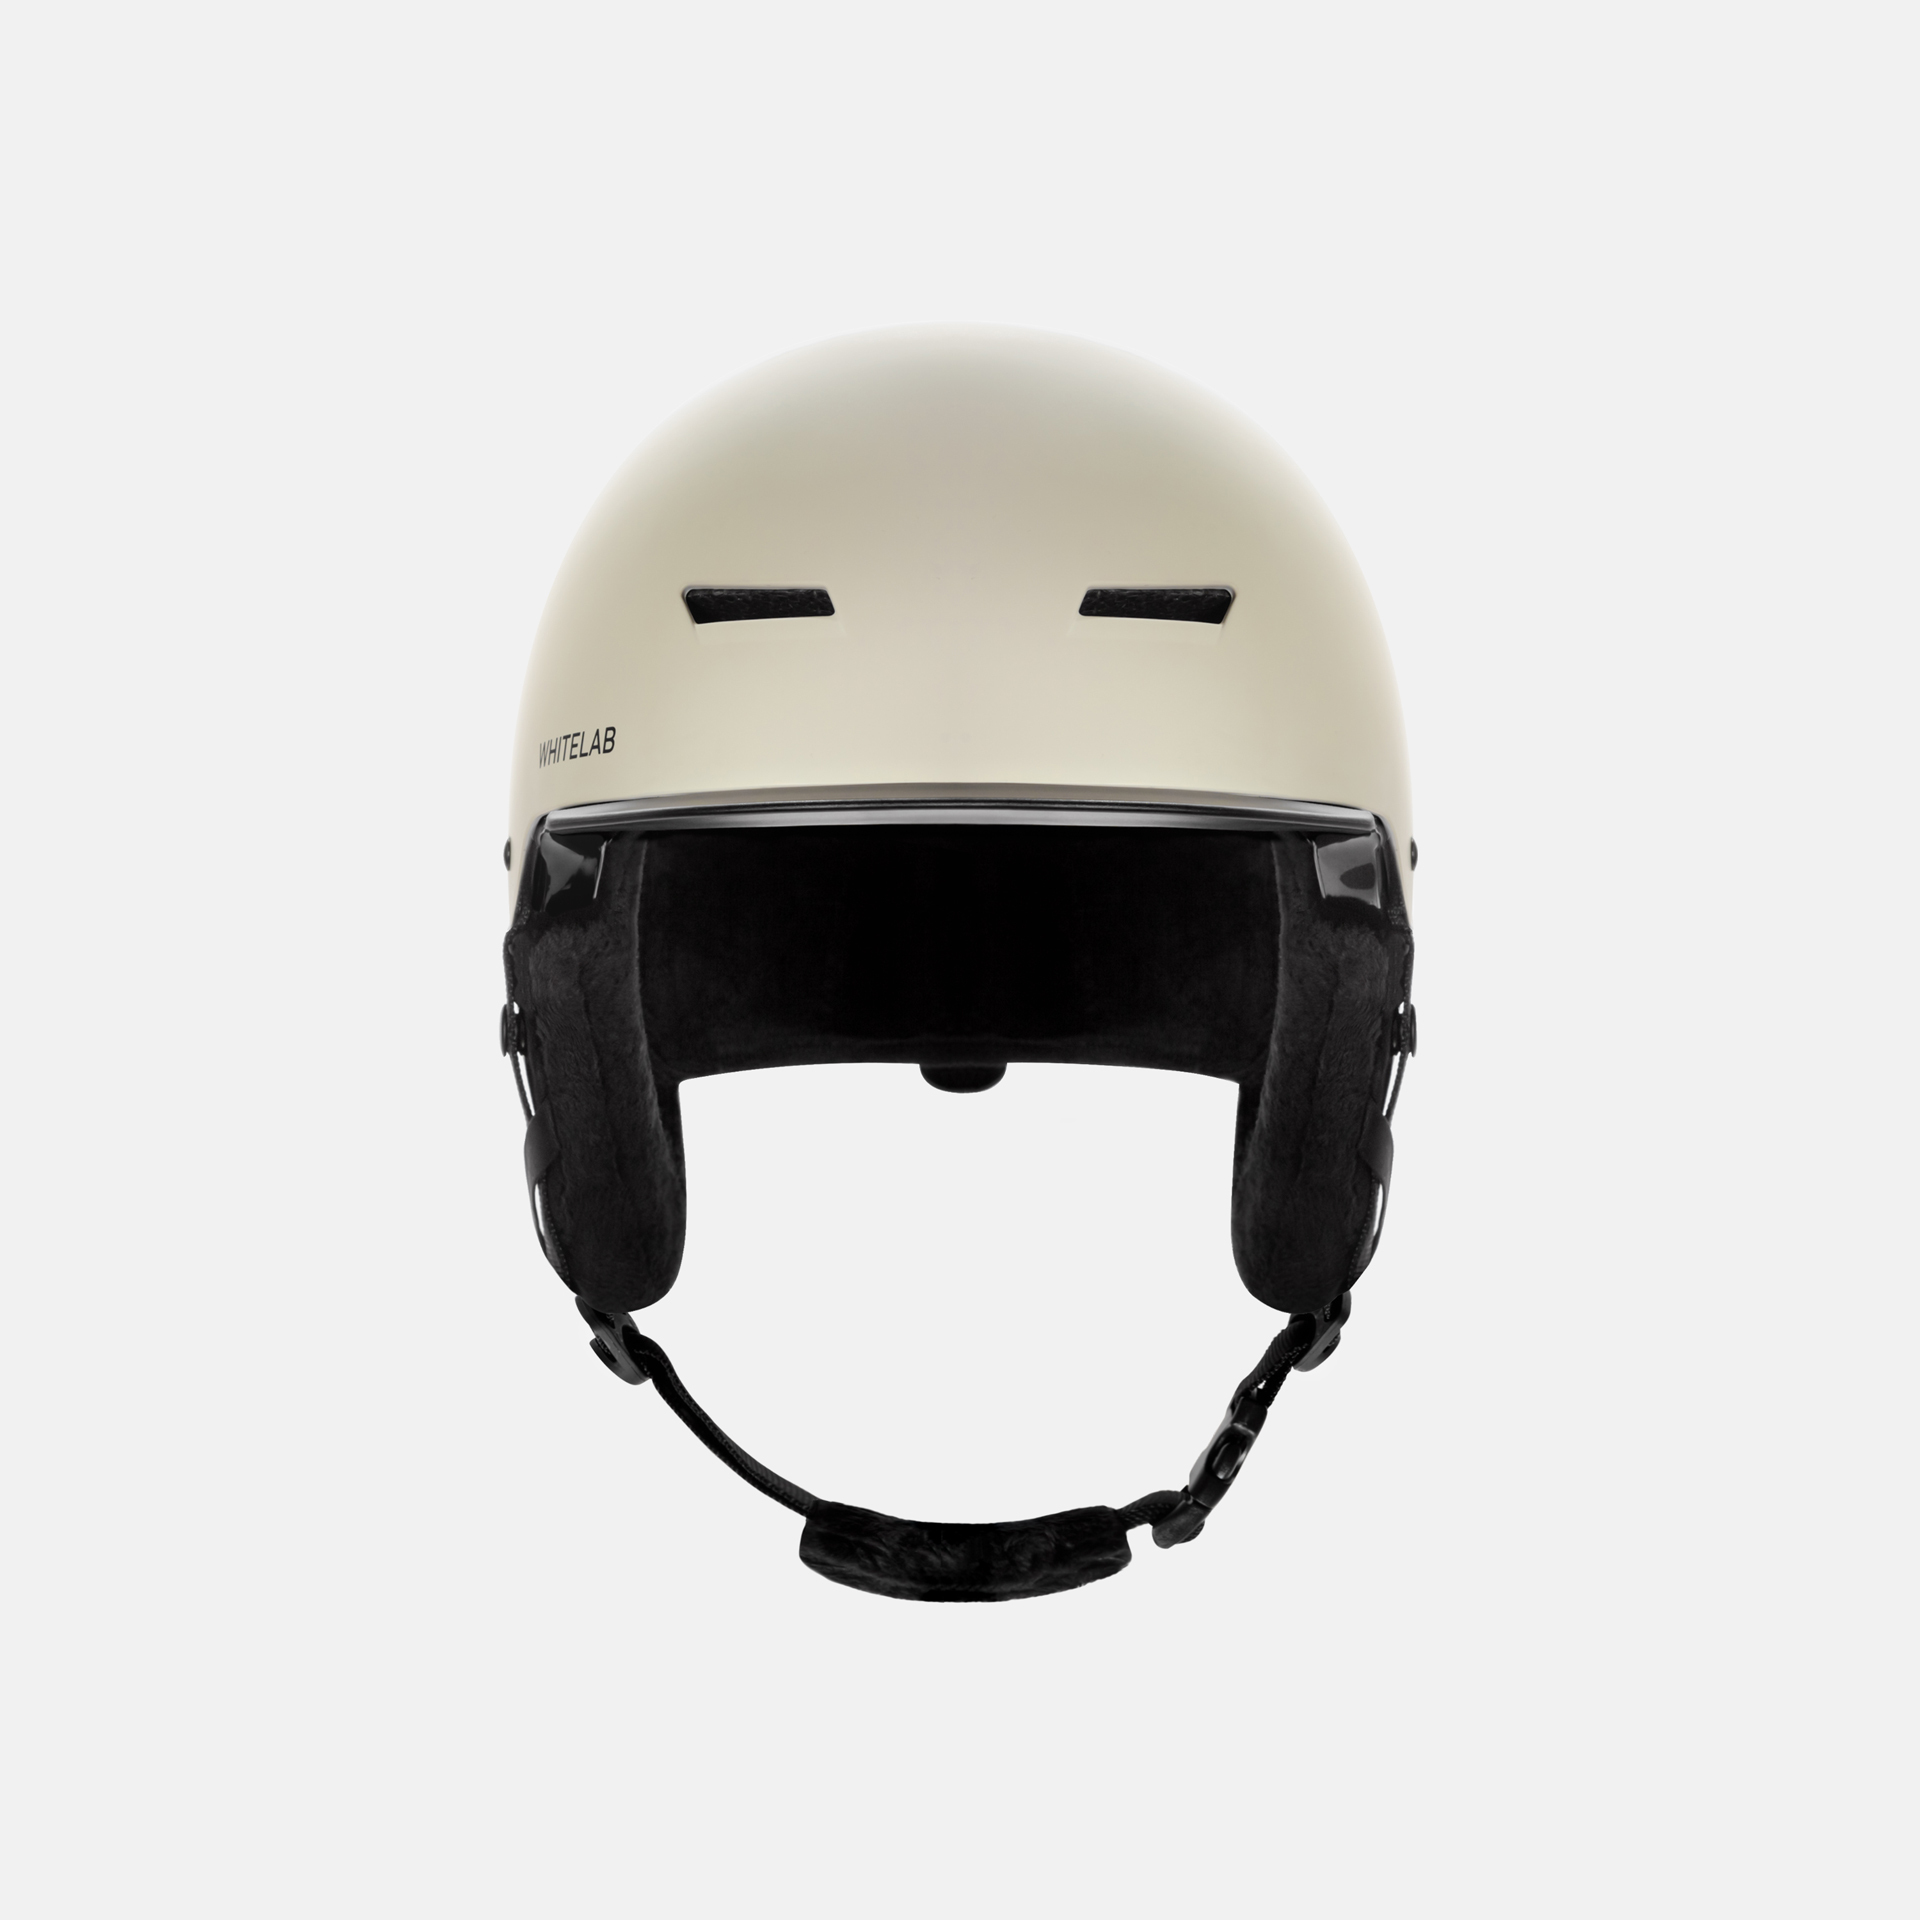 Сколько стоит шлем для сноуборда?